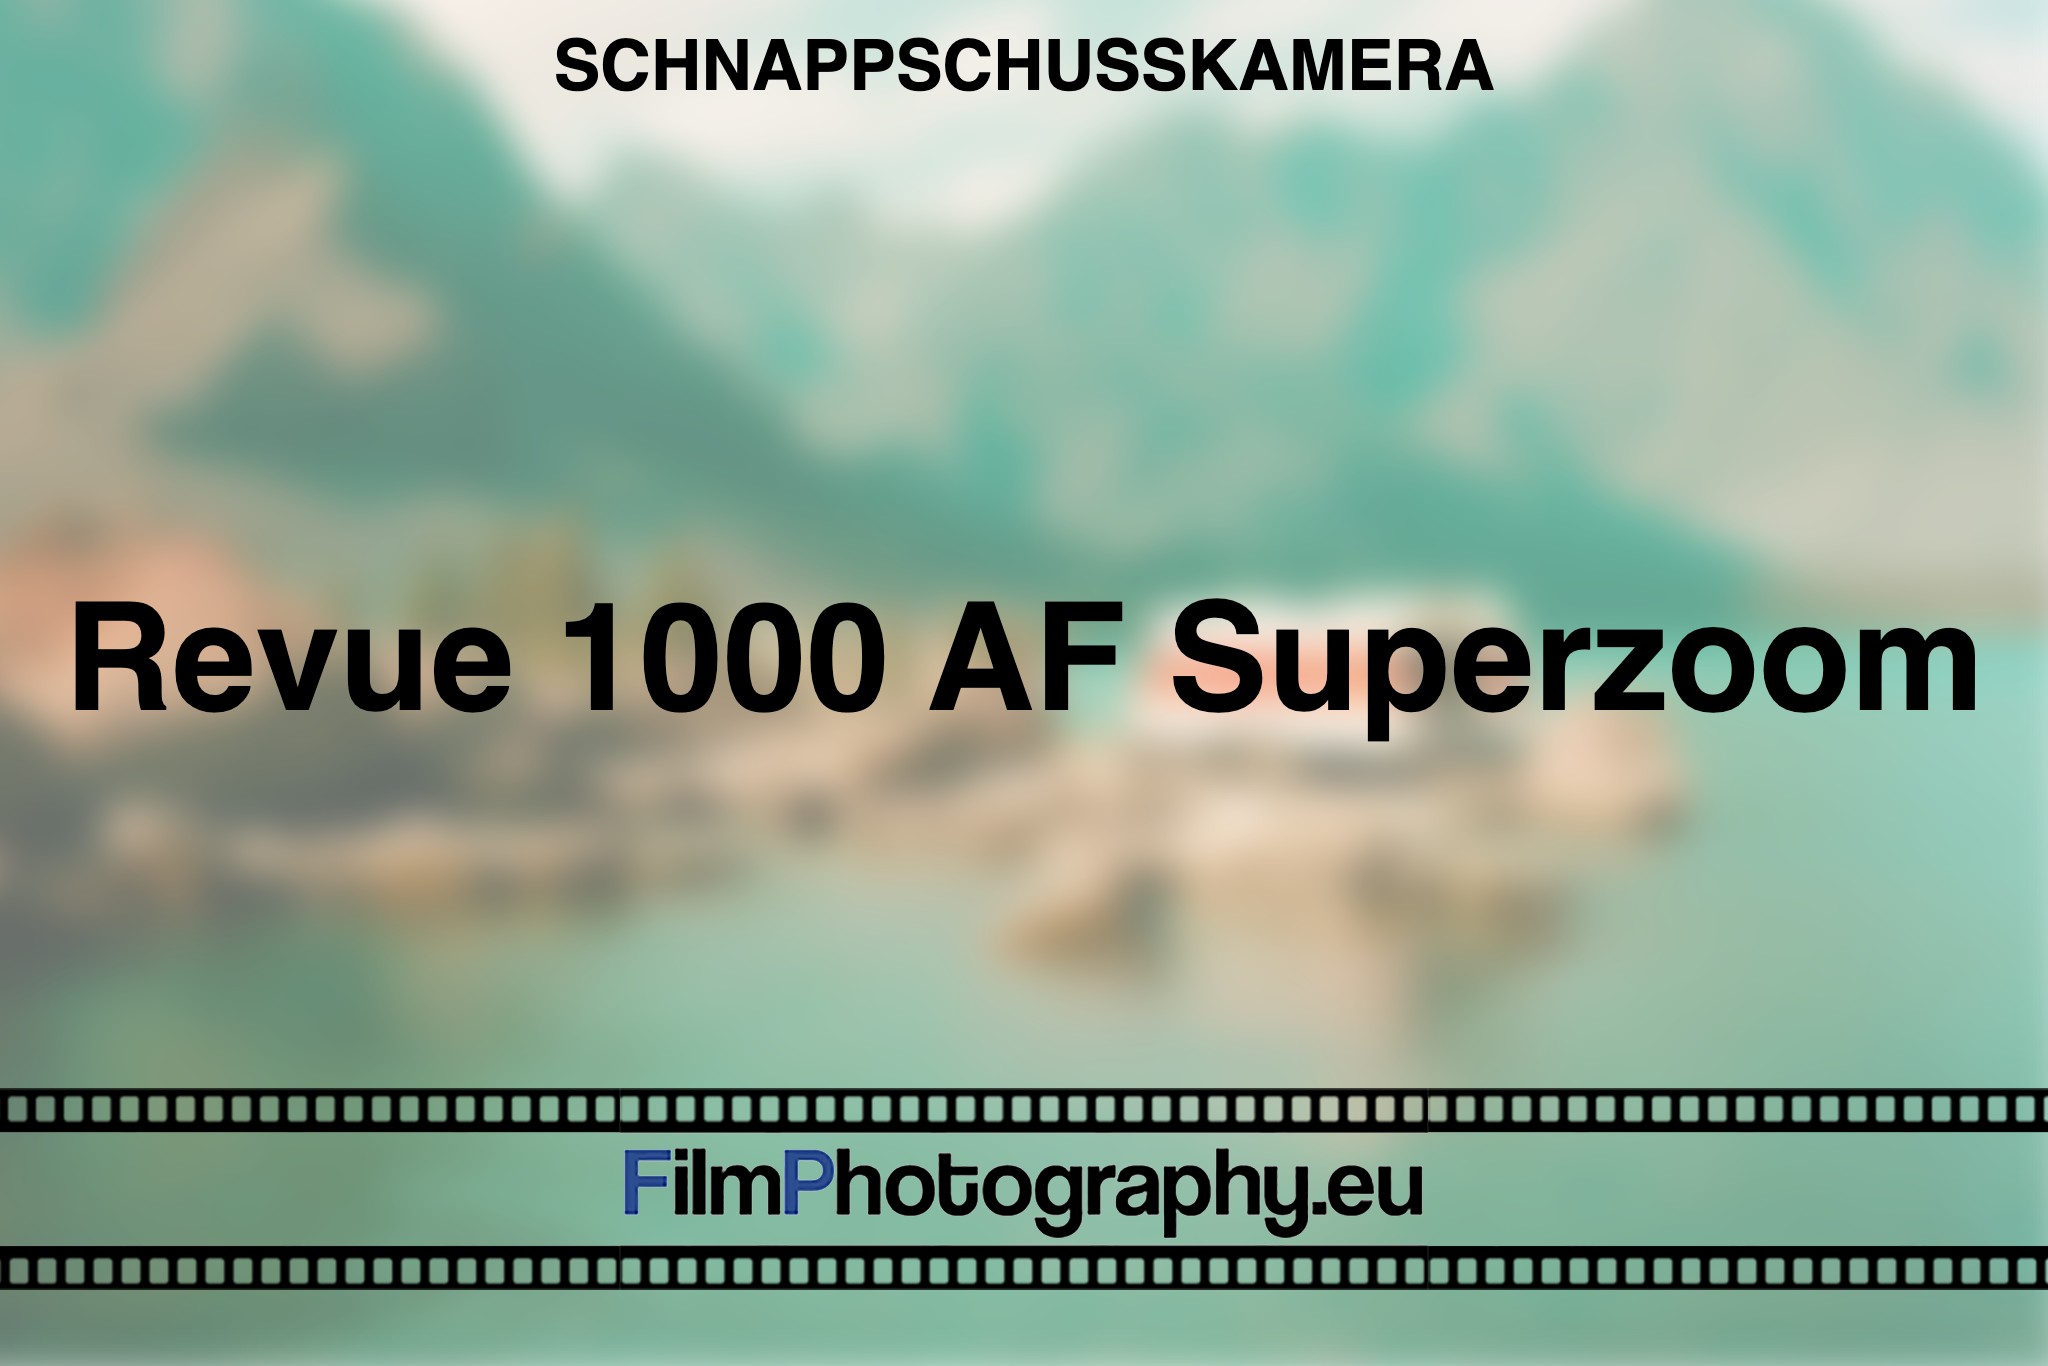 revue-1000-af-superzoom-schnappschusskamera-bnv